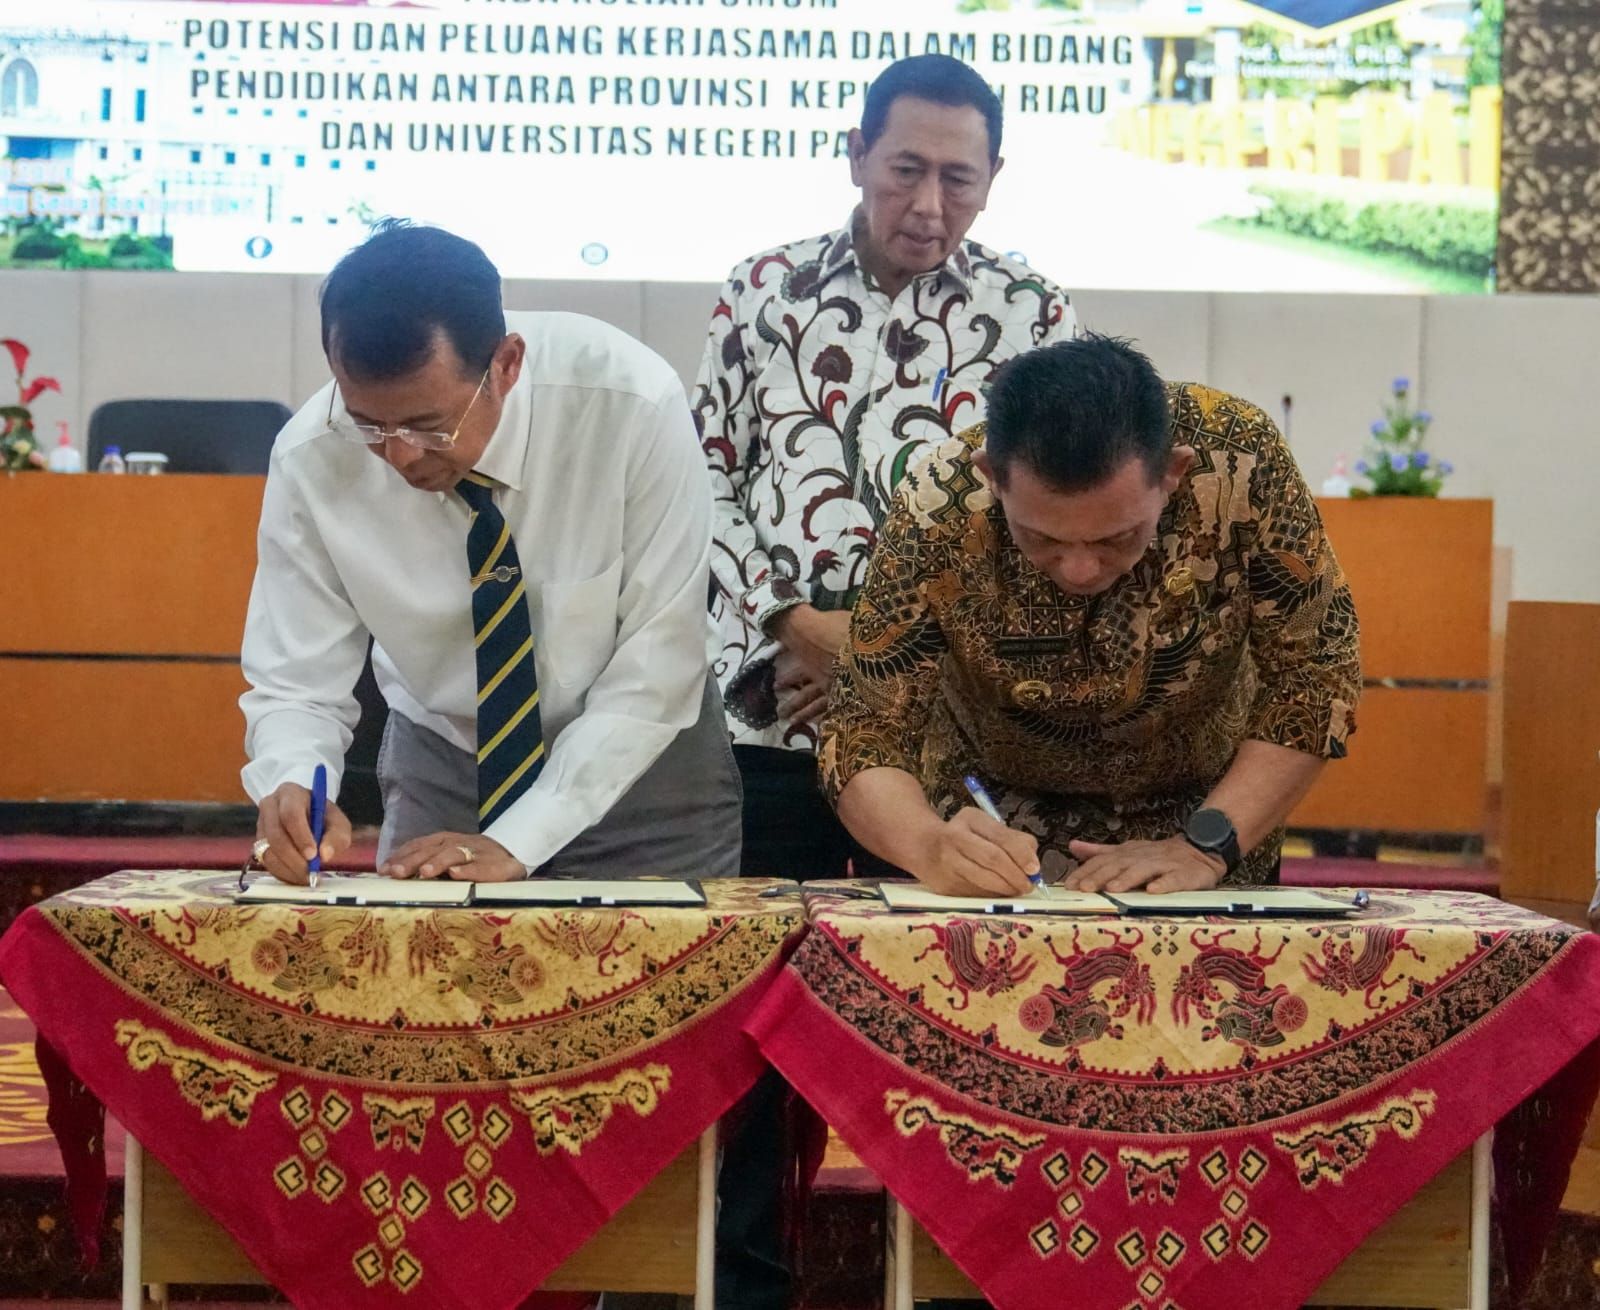 Jalin Kerja Sama dengan Universitas Negeri Padang, Pemprov Kepri Perluas Jejaring Pendidikan dan Tingkatkan Kualifikasi Tendik